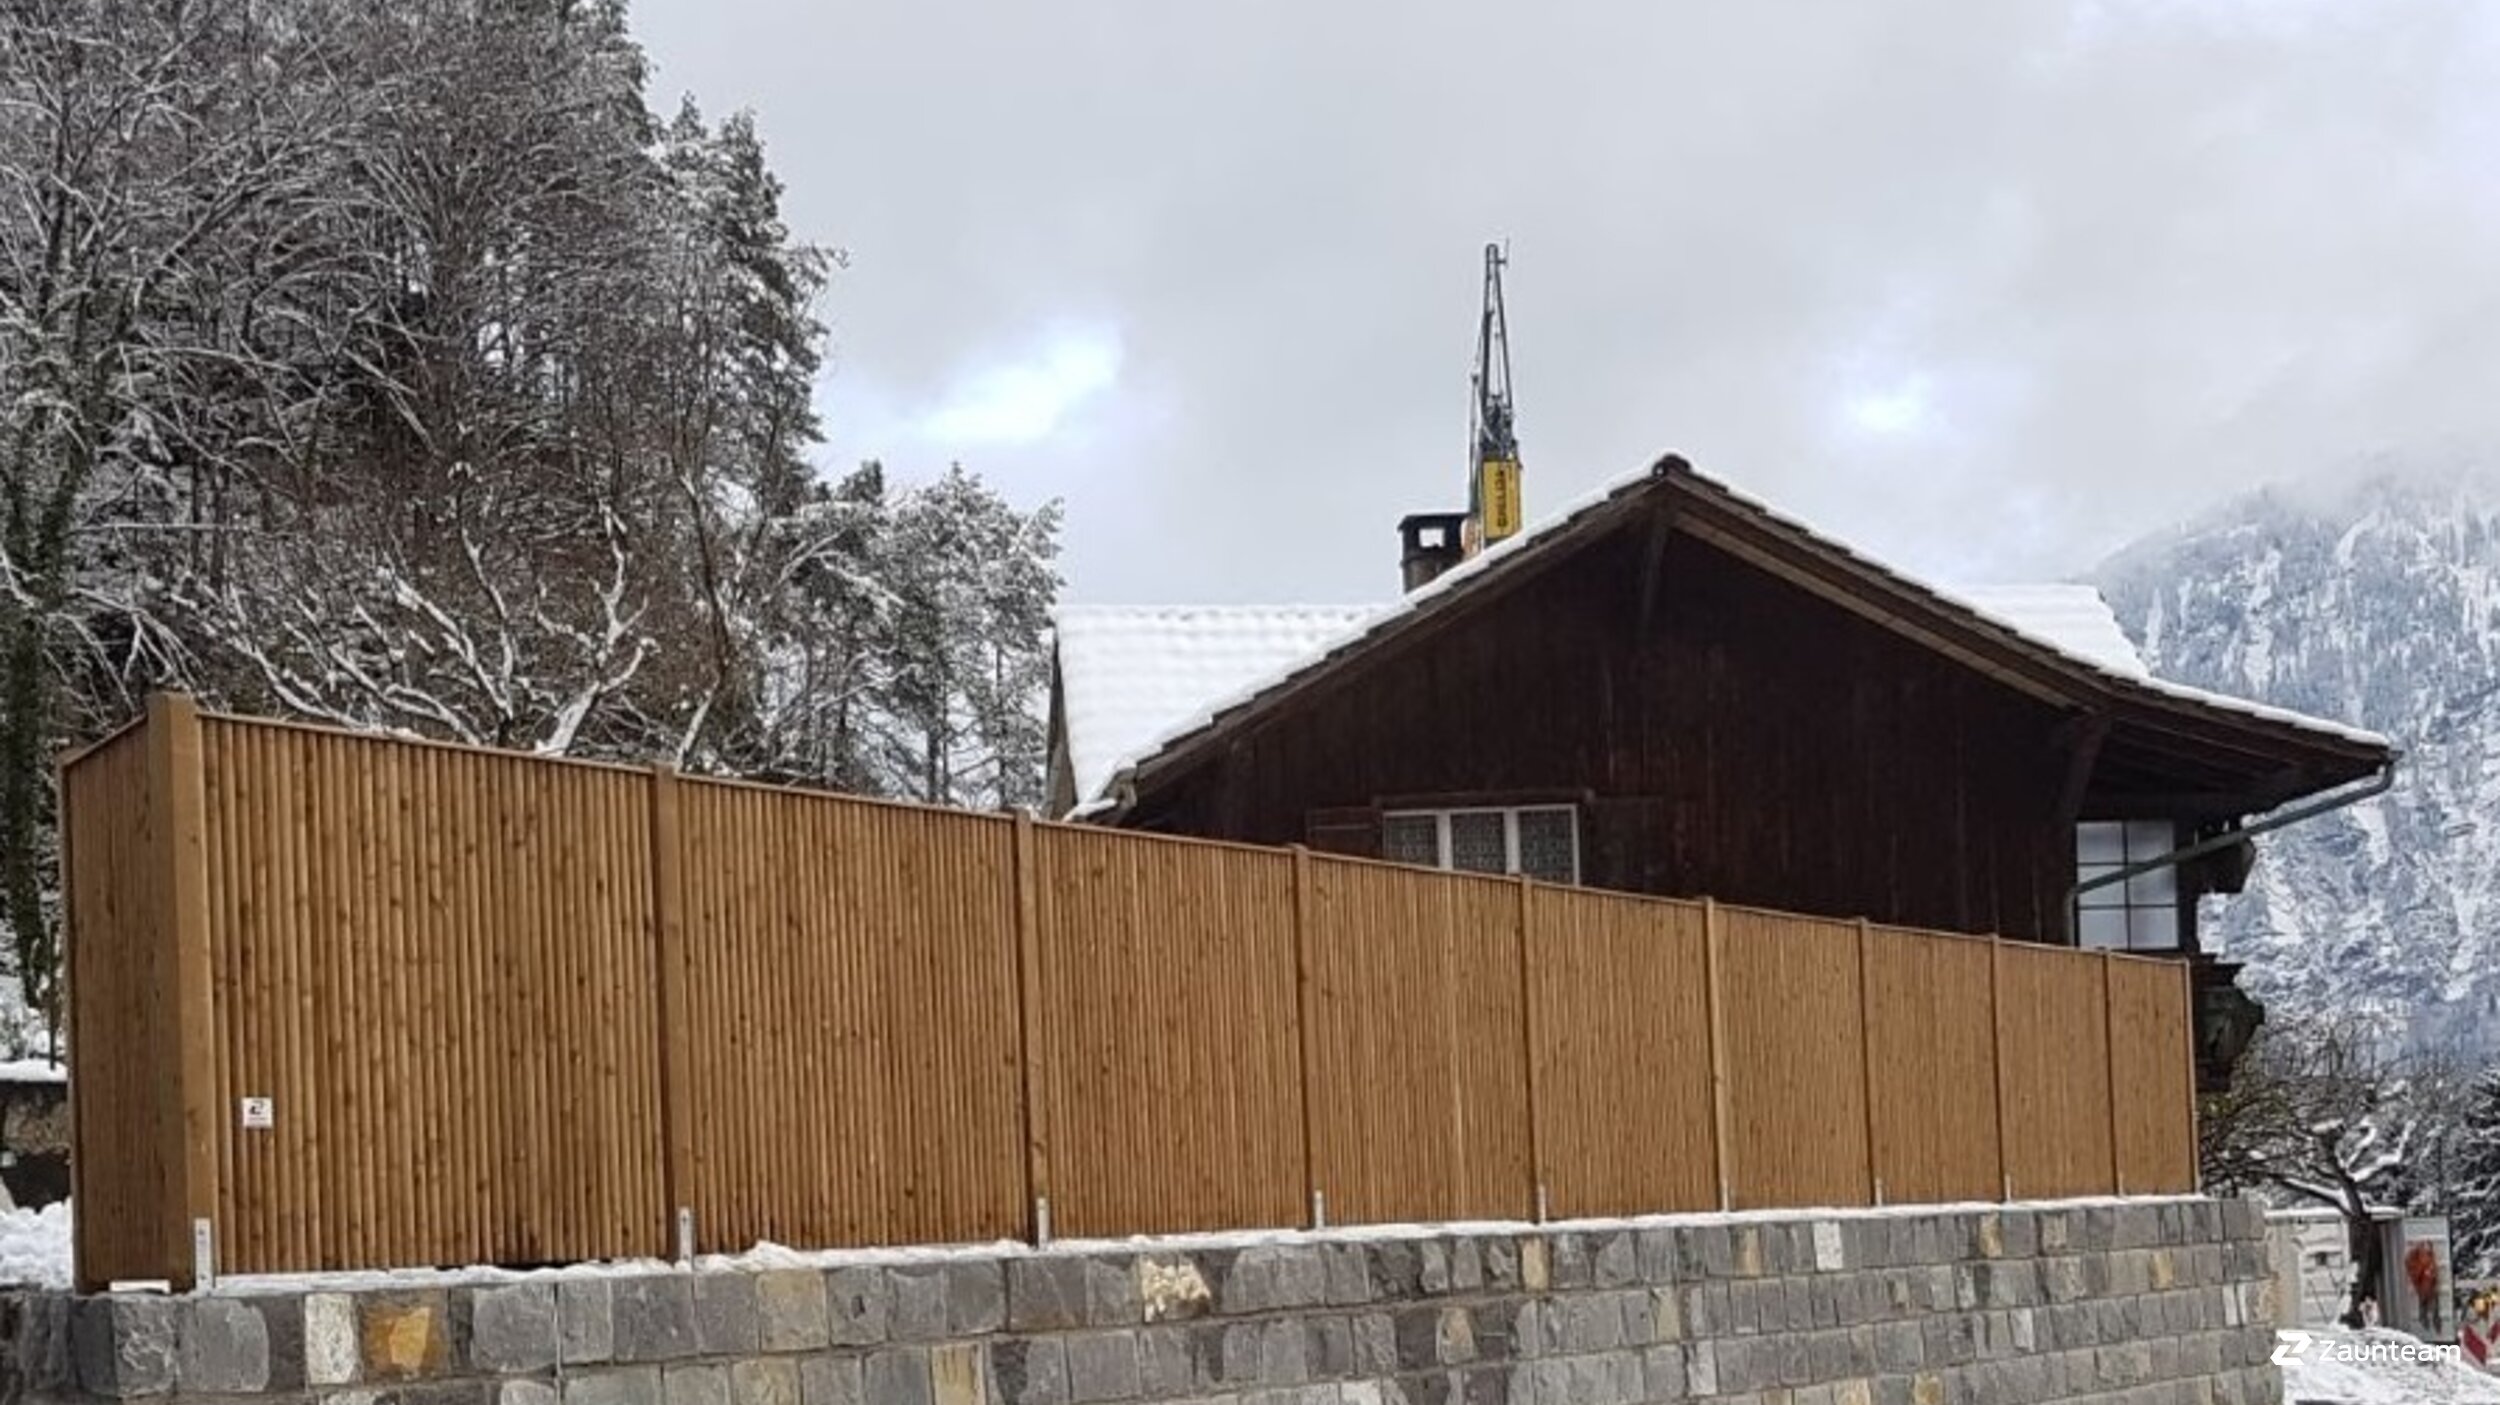 Protection brise-vue en bois de 2017 à 3800 Sundlauenen Suisse de Zaunteam Berner Oberland.